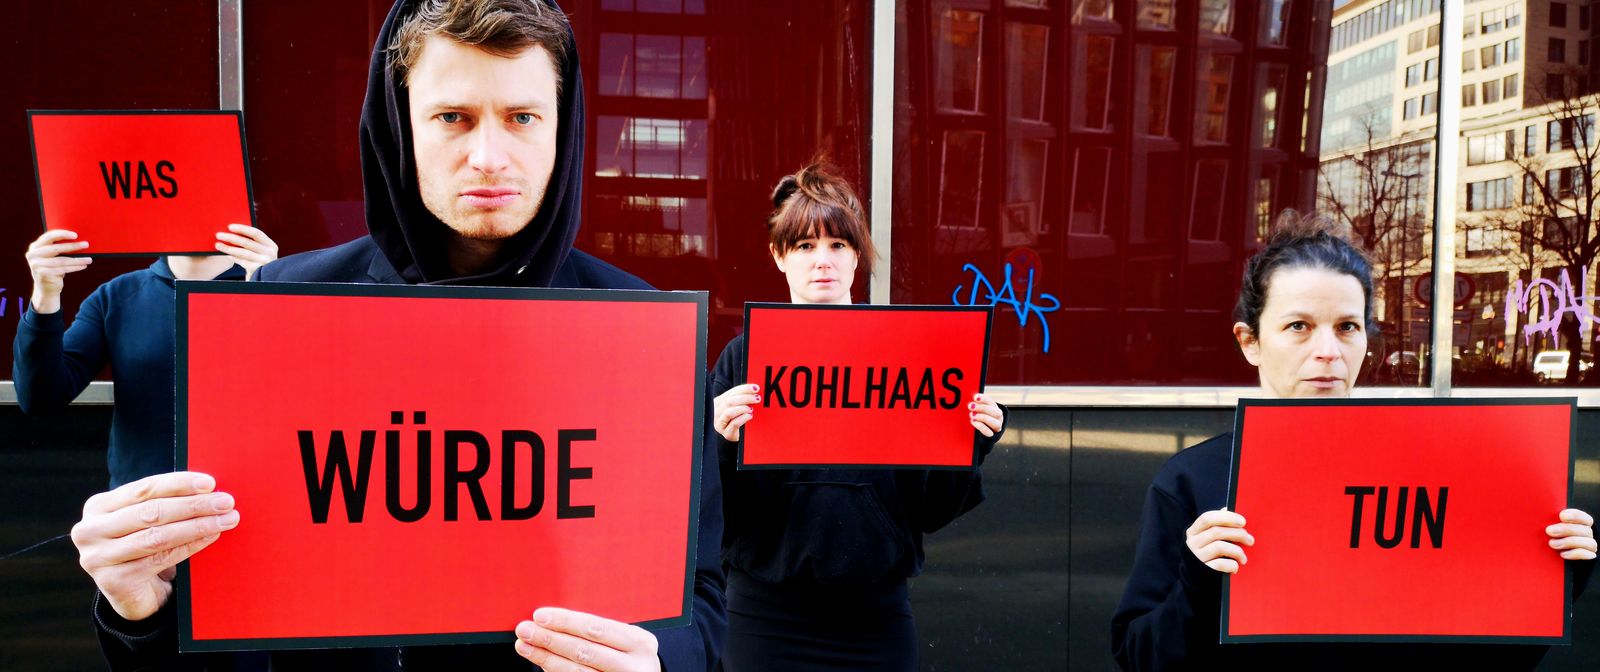 4 Personen im Kapuzenpulli stehen versetzt vor einem Gebäude. Sie halten rote Schilder mit jeweils einem Wort hoch, die den Satz "Was würde Kohlhaas tun" ergeben.